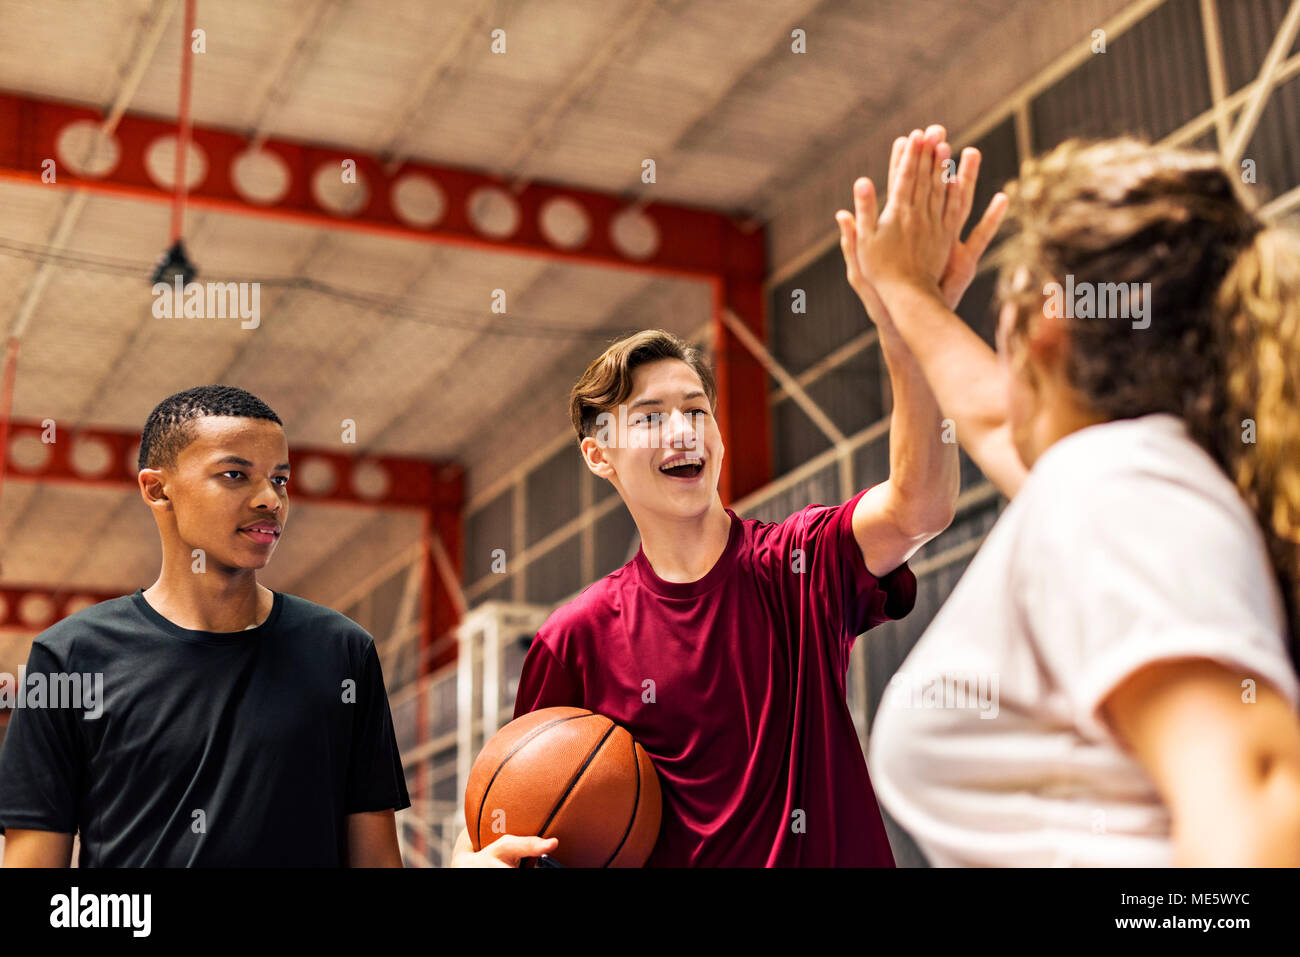 Grupo de Amigos adolescente en una cancha de baloncesto dándose mutuamente una alta cinco Foto de stock